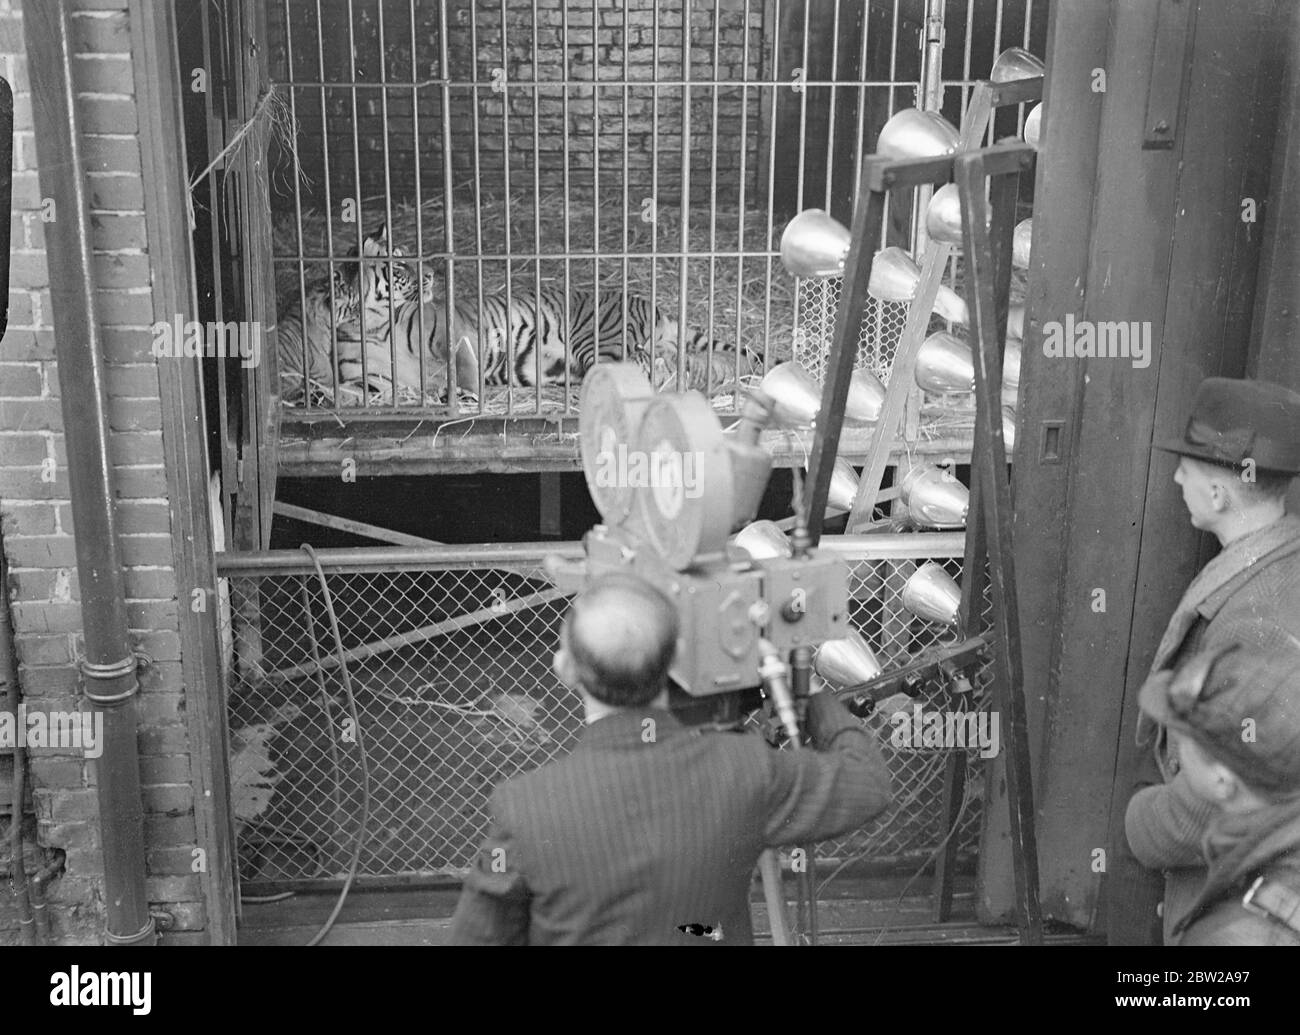 Nove leoni, leopardi e tigri nati allo zoo di Chessington. Credeva un record. Nell'arco delle ultime sei settimane, tre cucciolate separate di leone forte e sano, tigre e leopardo sono nate allo zoo di Chessington, Surrey. Si ritiene che la nascita dei cuccioli, dei due leopardi, delle tre tigri e dei quattro leoni, stabilisca un record per uno zoo britannico. Spettacoli fotografici, riprese dei cuccioli di tigre allo zoo di Chessington. 25 novembre 1937 Foto Stock